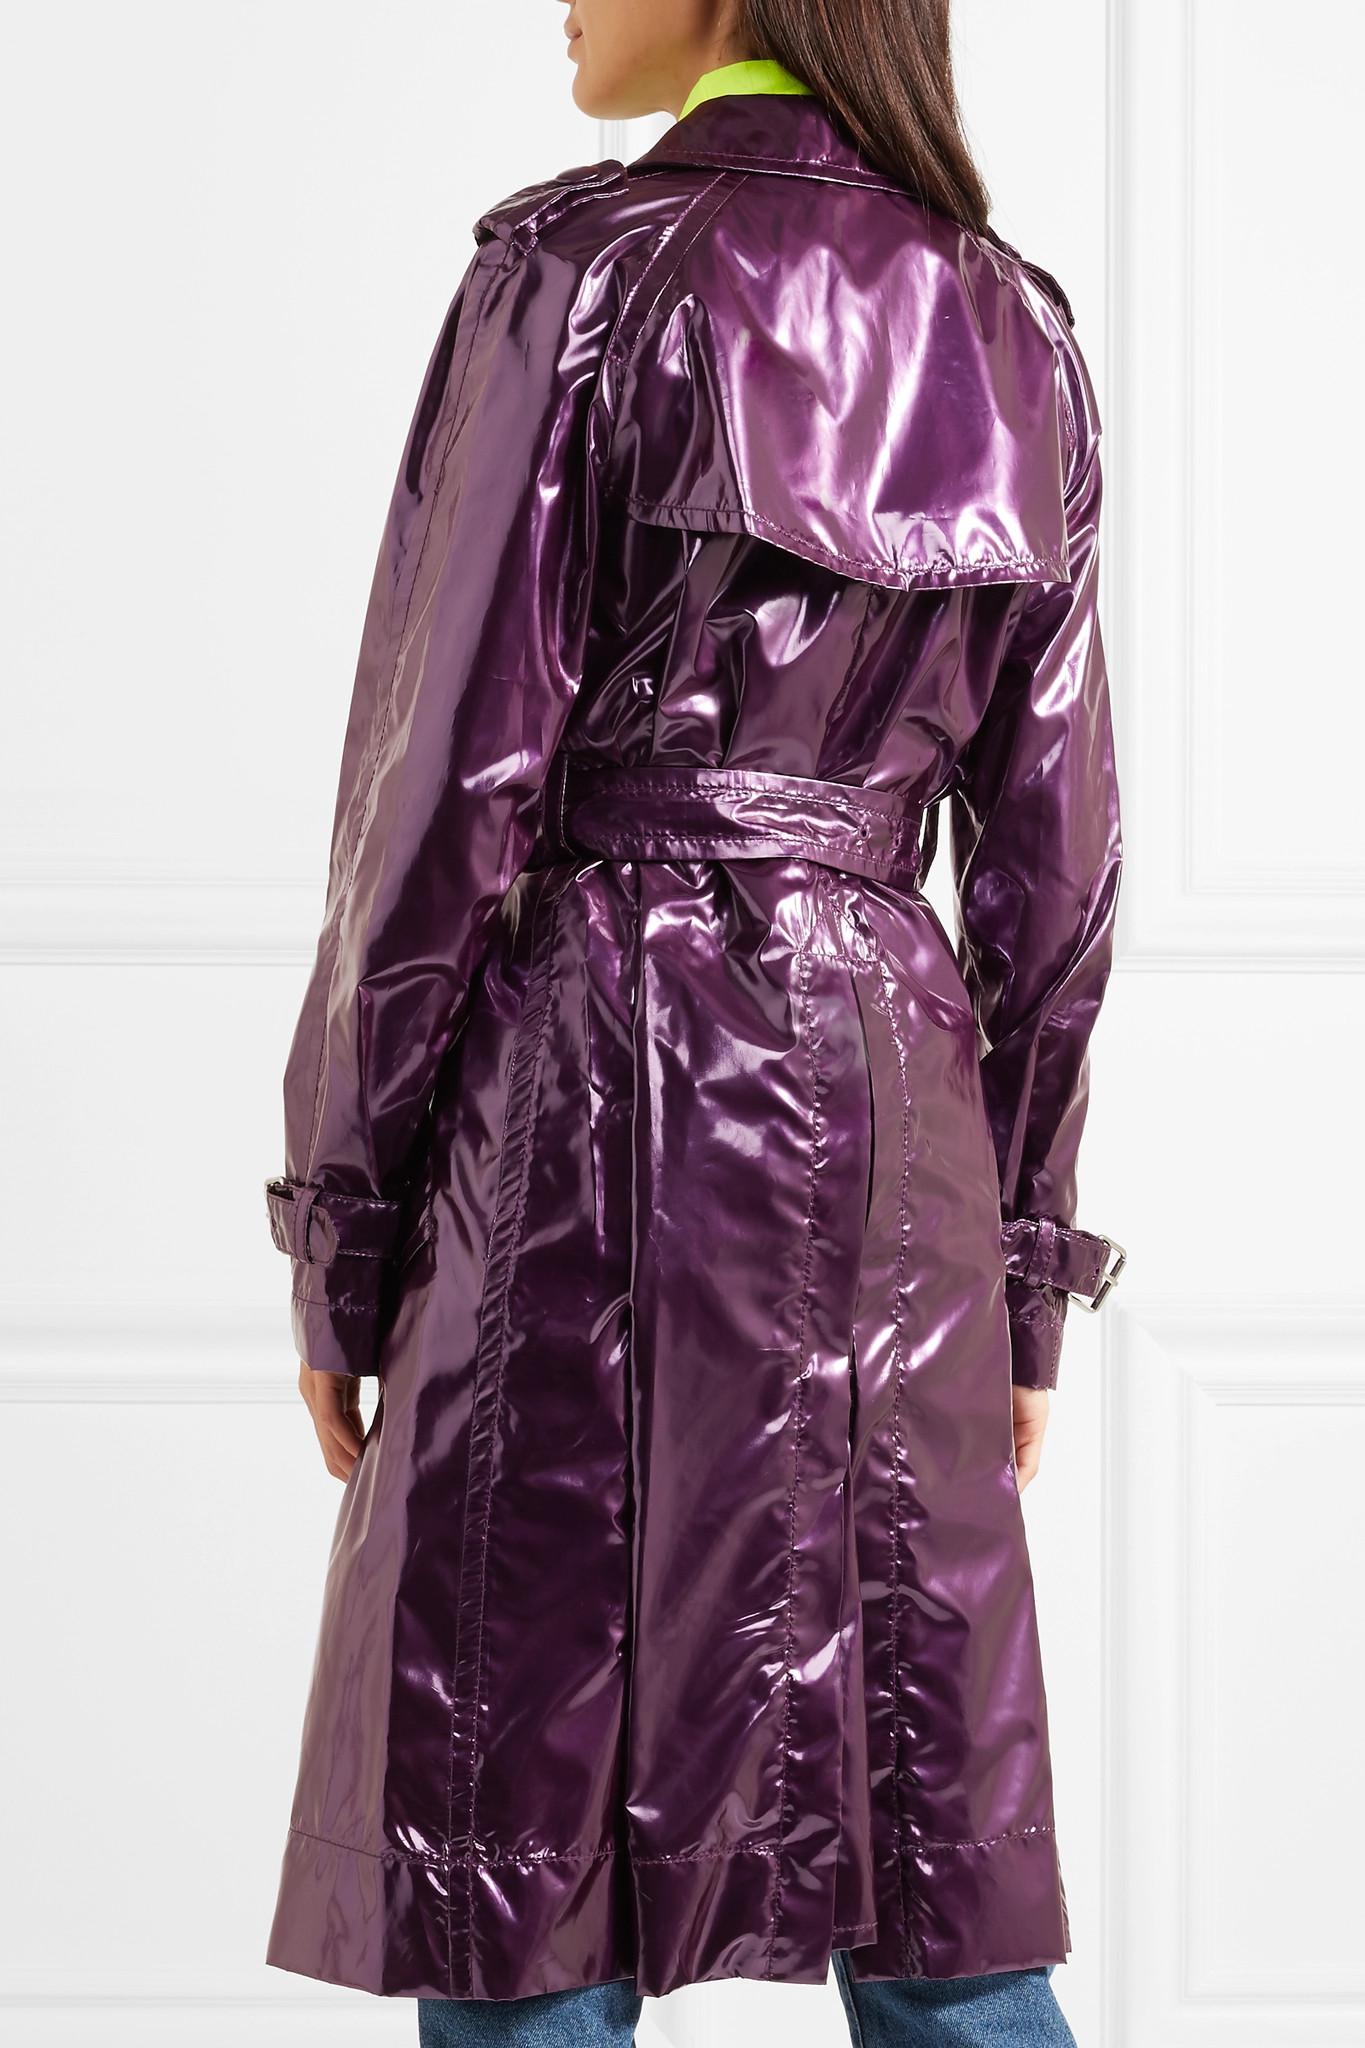 Marc Jacobs Metallic Vinyl Trench Coat in Purple - Lyst